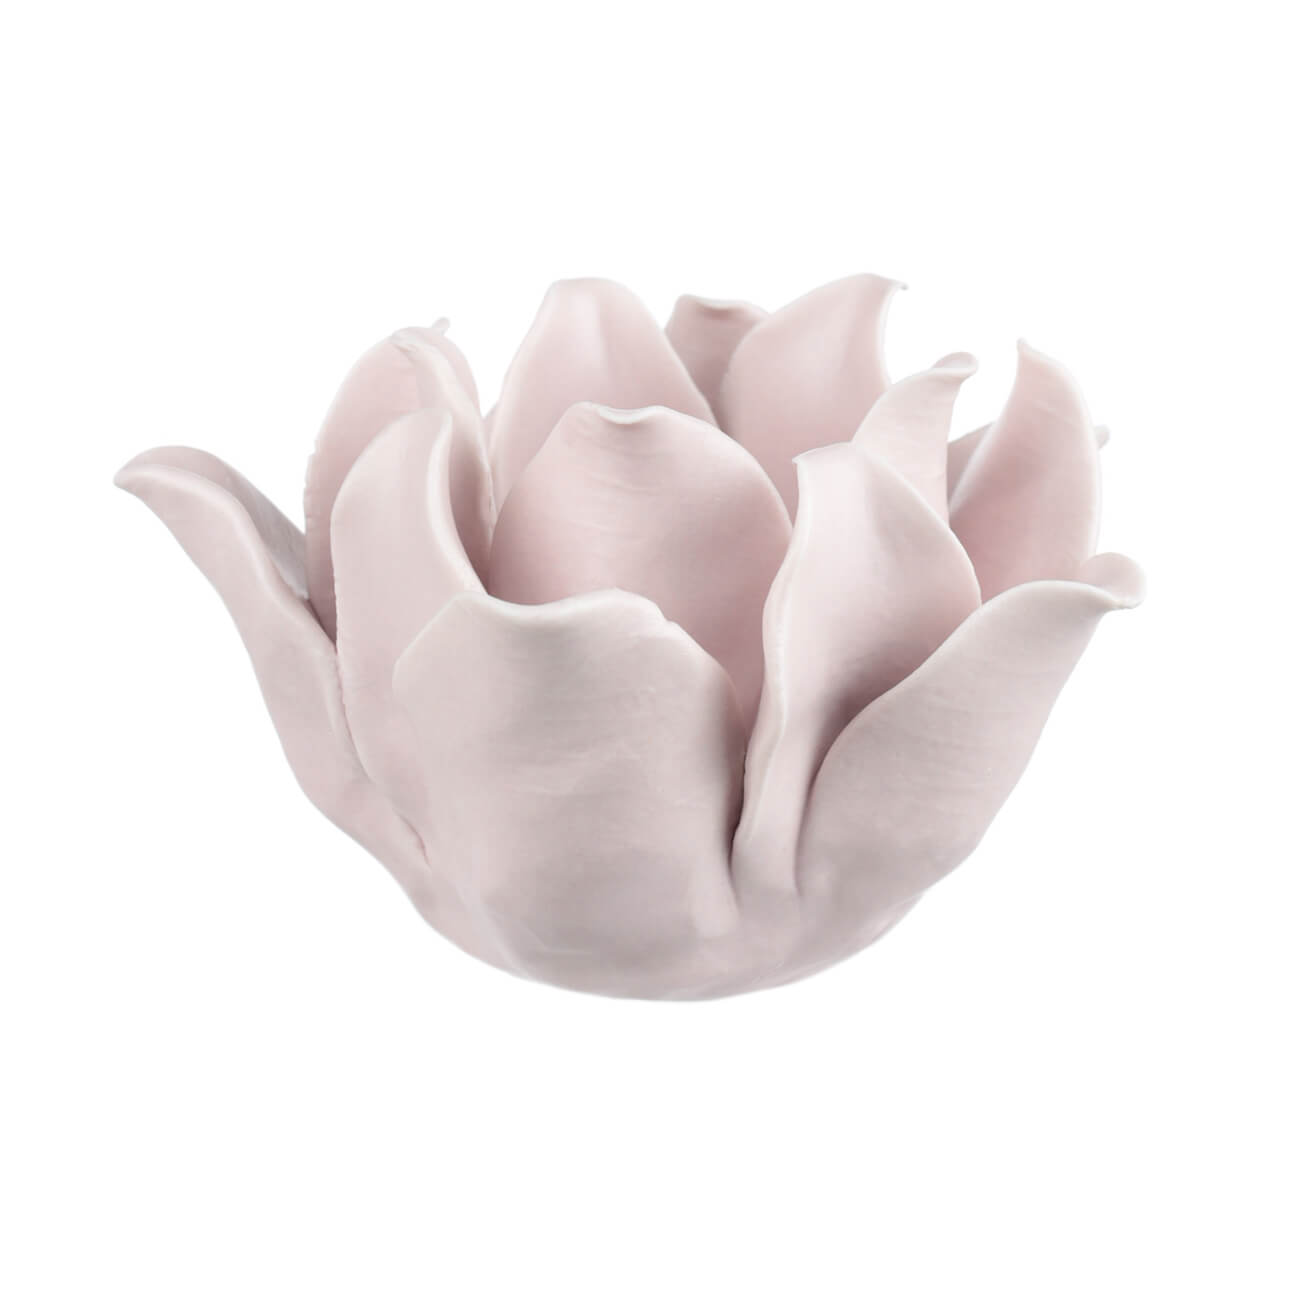 Подсвечник, 10 см, для чайной свечи, фарфор P, розовый, Цветок, Magnolia подсвечник 10 см для чайной свечи фарфор p розовый ок magnolia